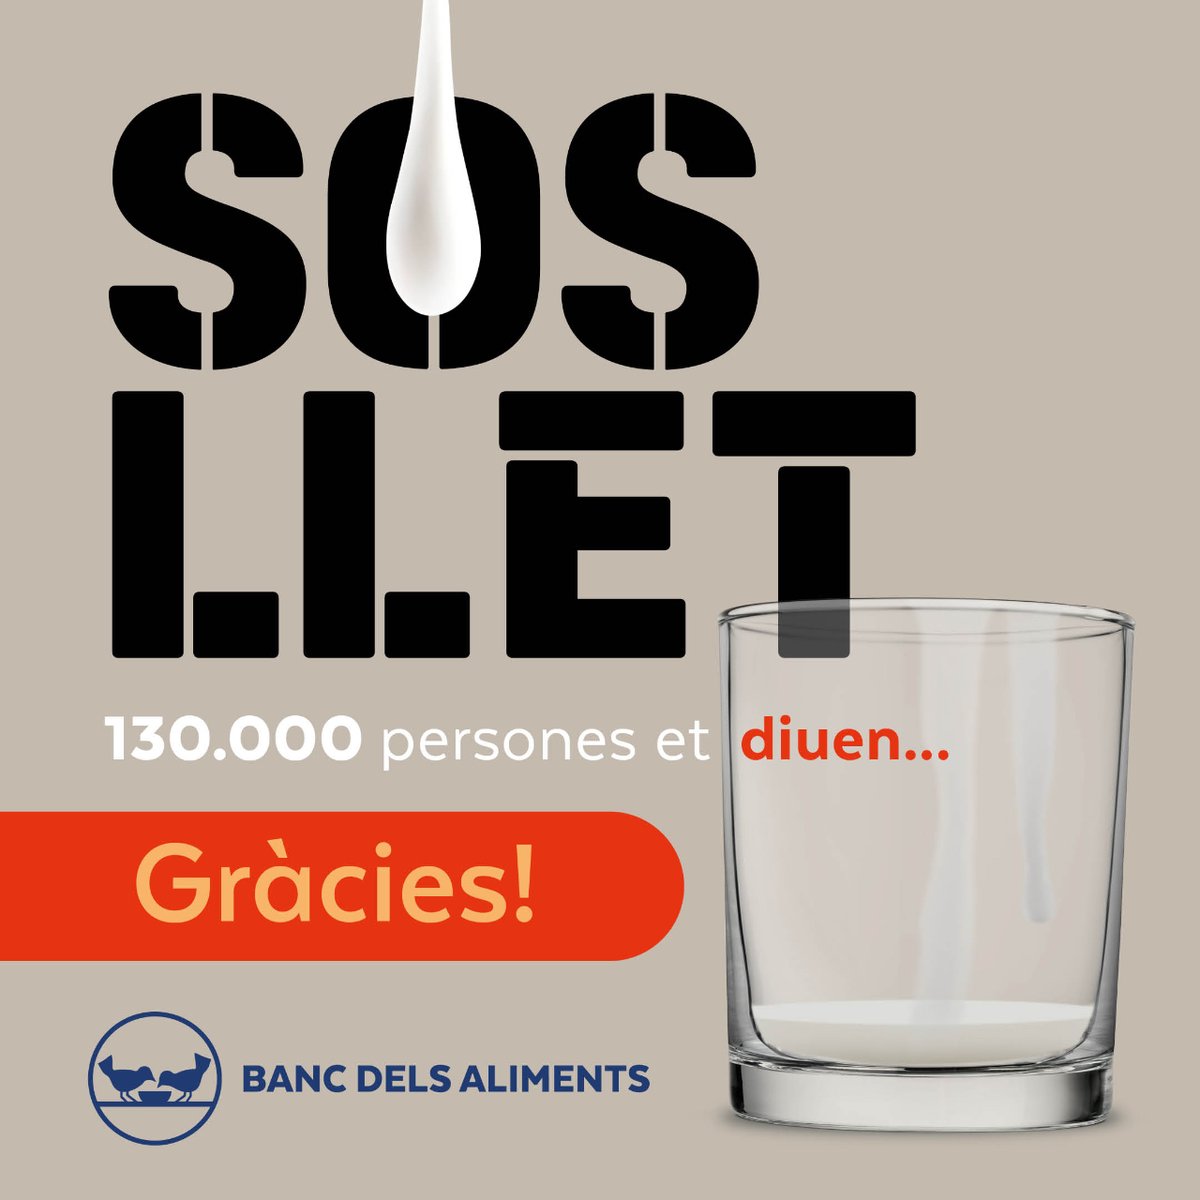 🤗GRÀCIES! Amb la campanya SOS LLET hem recollit 53.754€ que ens permetran seguir distribuint llet semidesnatada, llet sense lactosa, llet fresca, llet en pols, beguda vegetal de soja, de civada i d'arròs.  ❤️Gràcies als 1000 donants! #SOSLLET #bancdelsaliments #barcelona